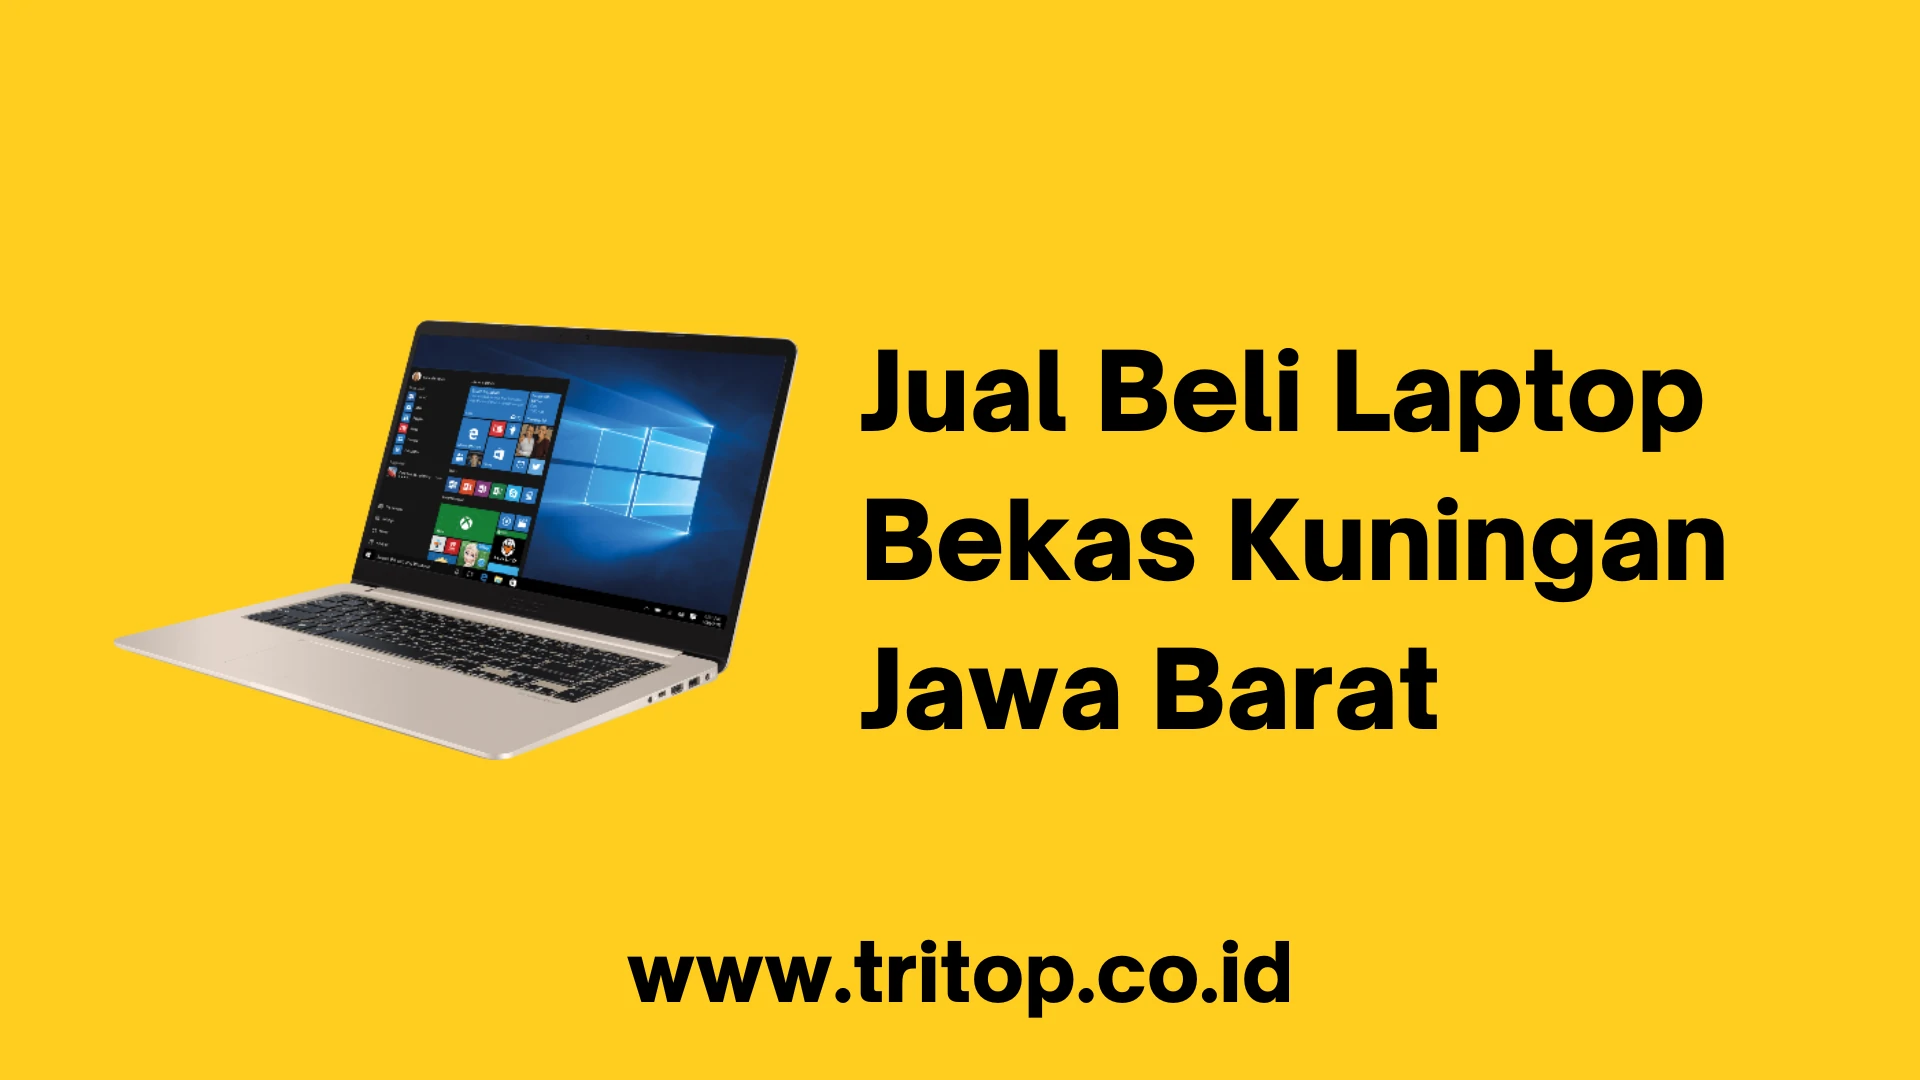 Jual Beli Laptop Bekas Kuningan Jawa Barat